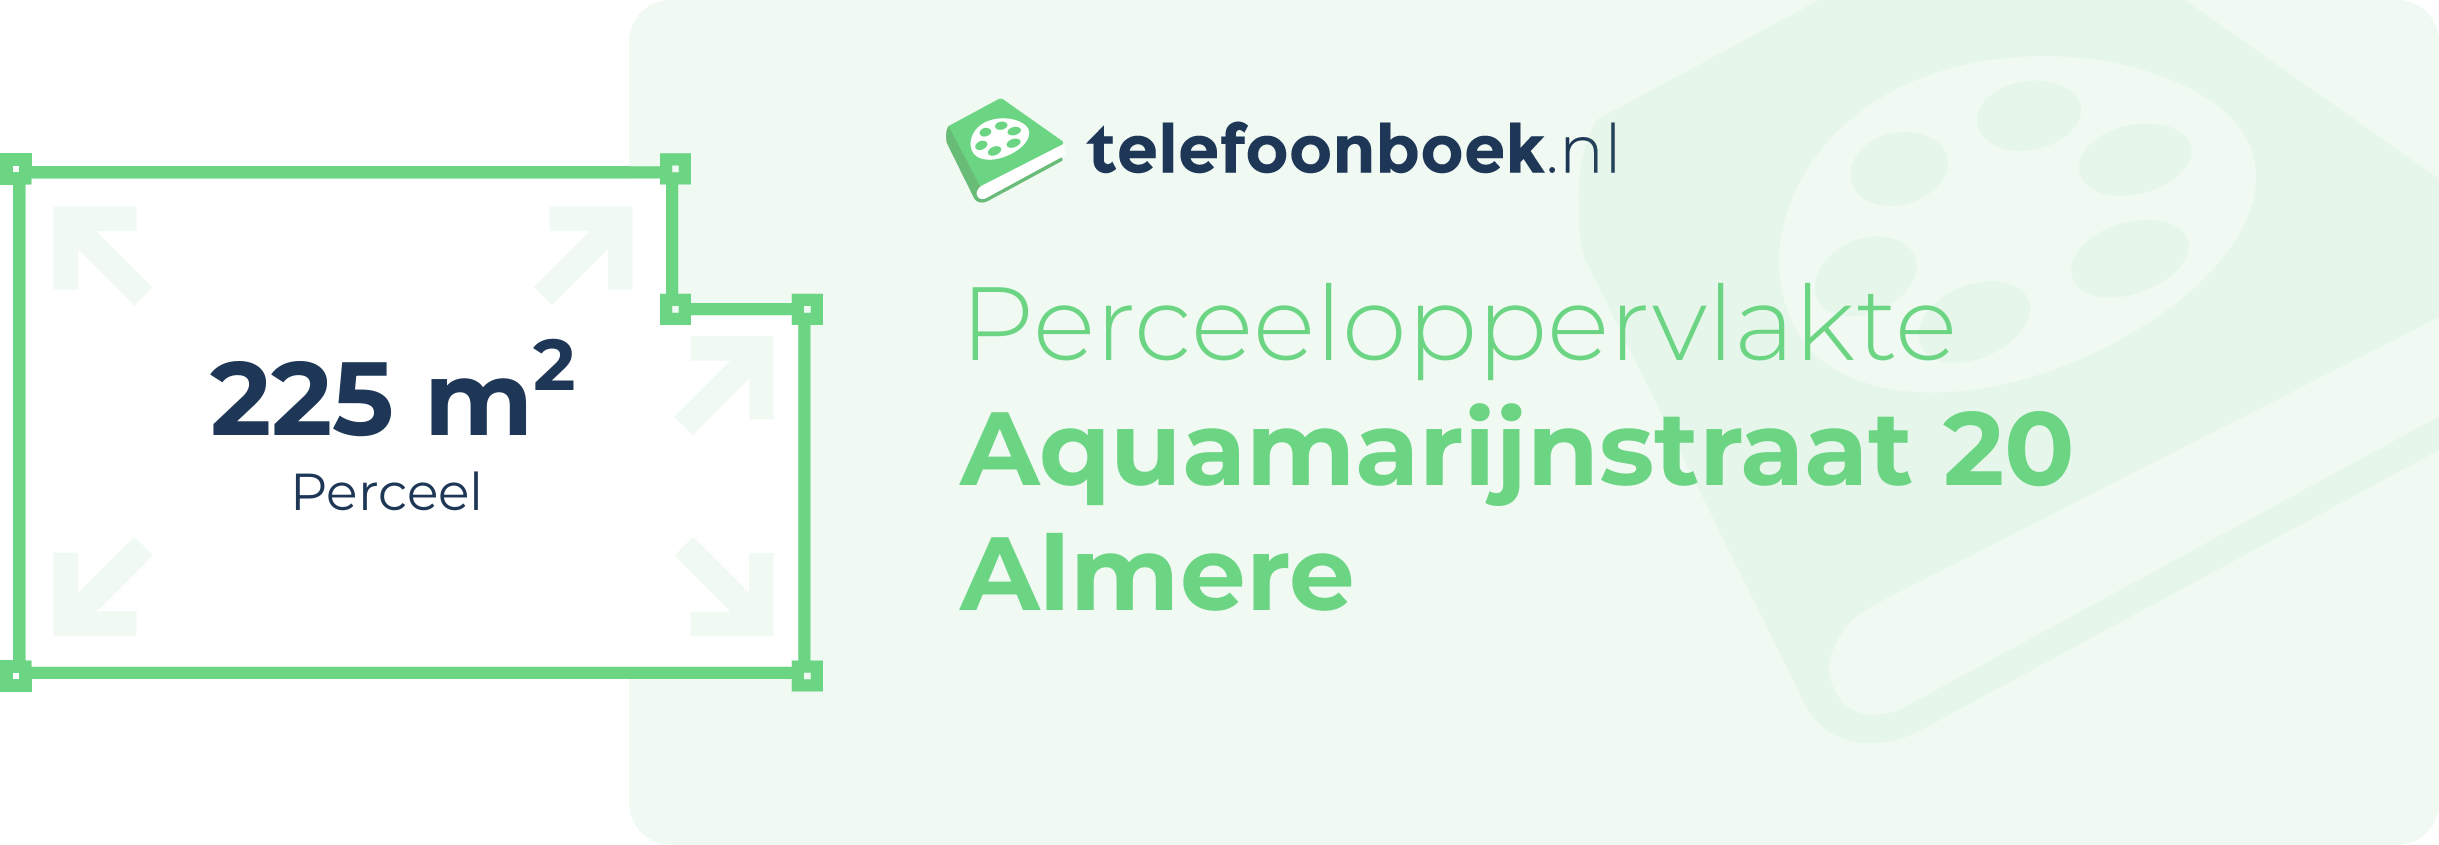 Perceeloppervlakte Aquamarijnstraat 20 Almere